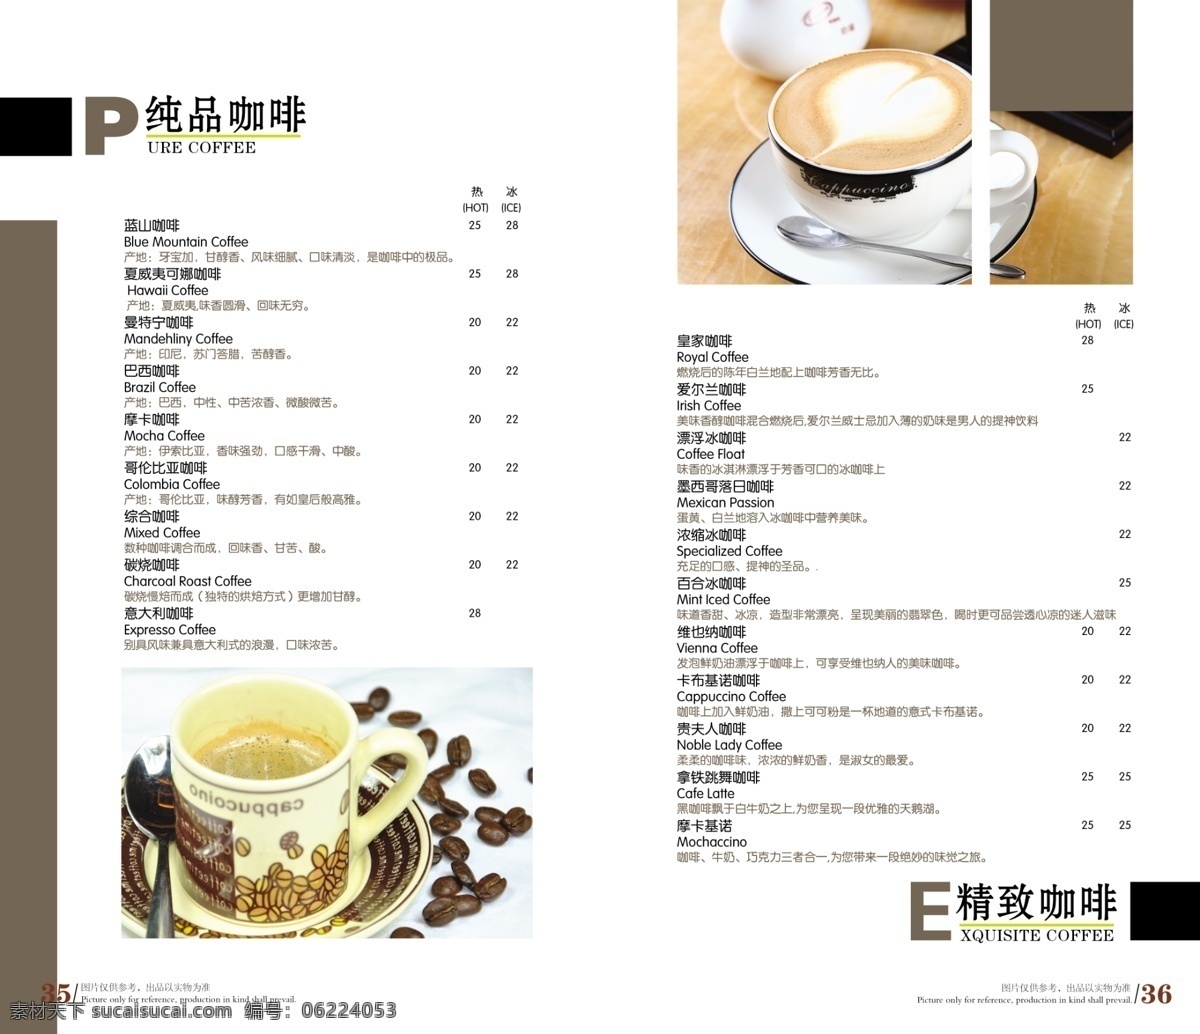 玛莎 拉 咖啡 美食 食品餐饮 菜单菜谱 分层psd 平面广告 海报 设计素材 平面模板 psd源文件 白色